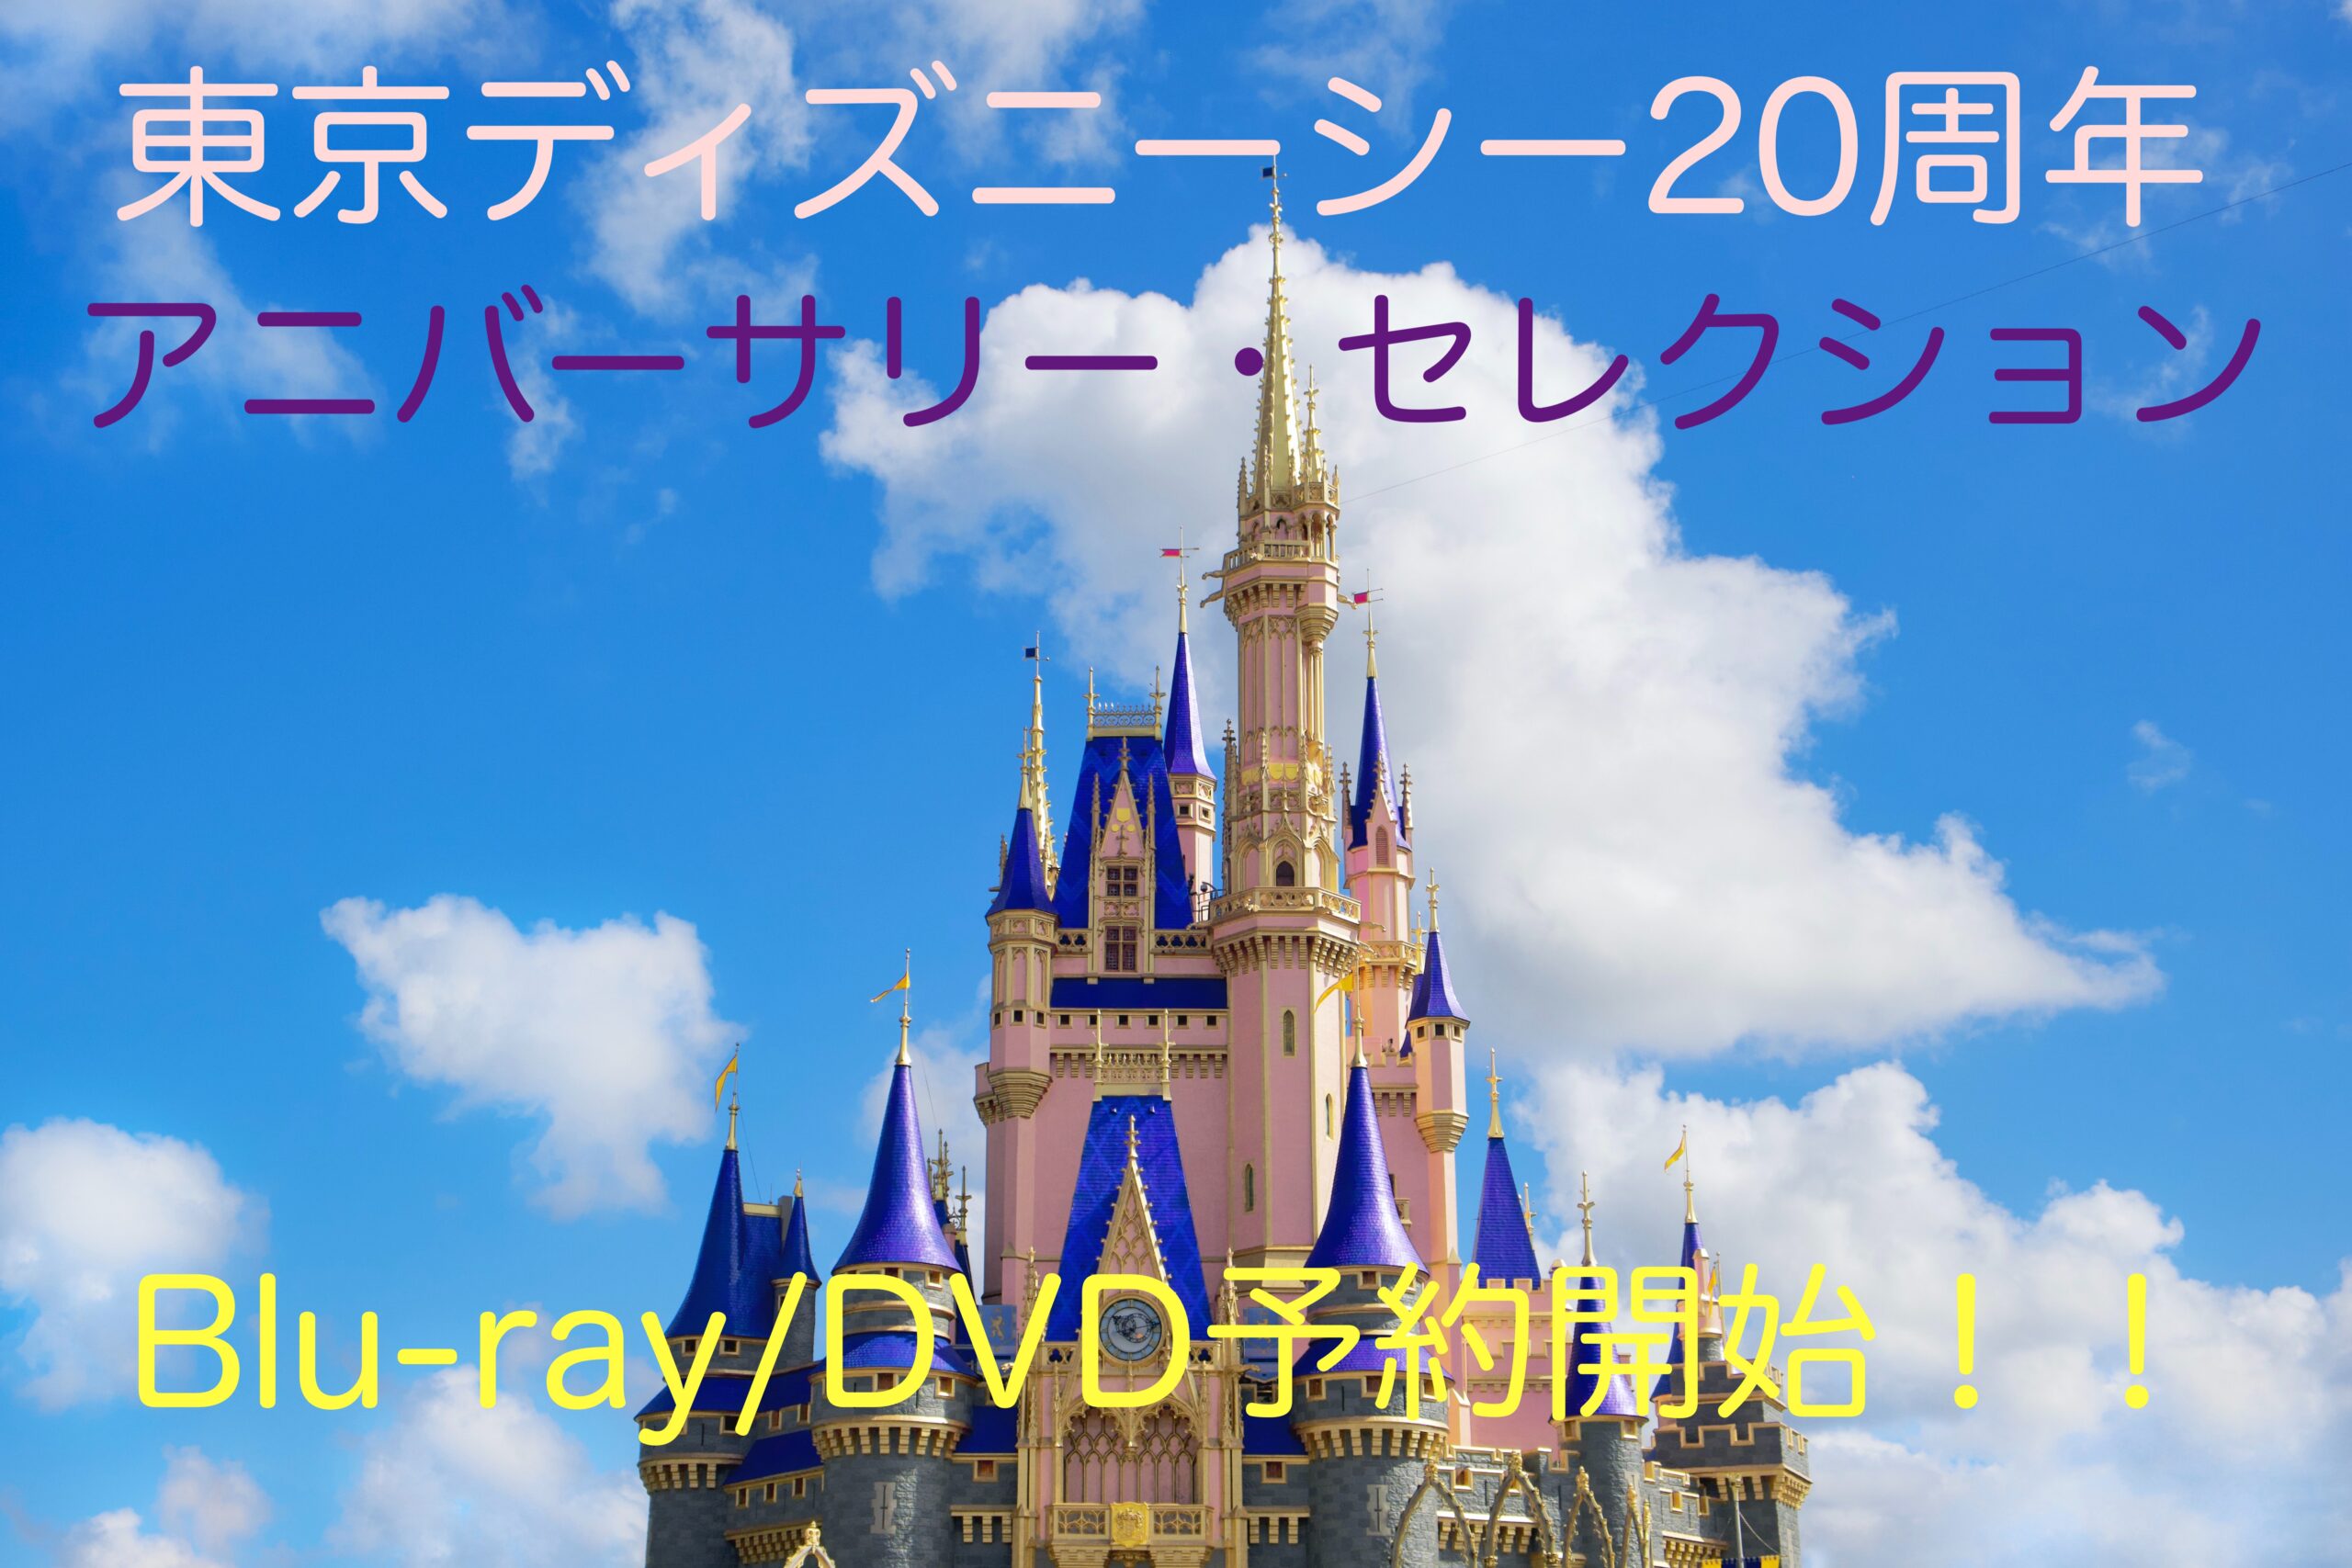 東京ディズニーシー 20周年 アニバーサリー セレクション Blu-ray Part 4: 2018-2022 ディズニー 人気商品ランキング